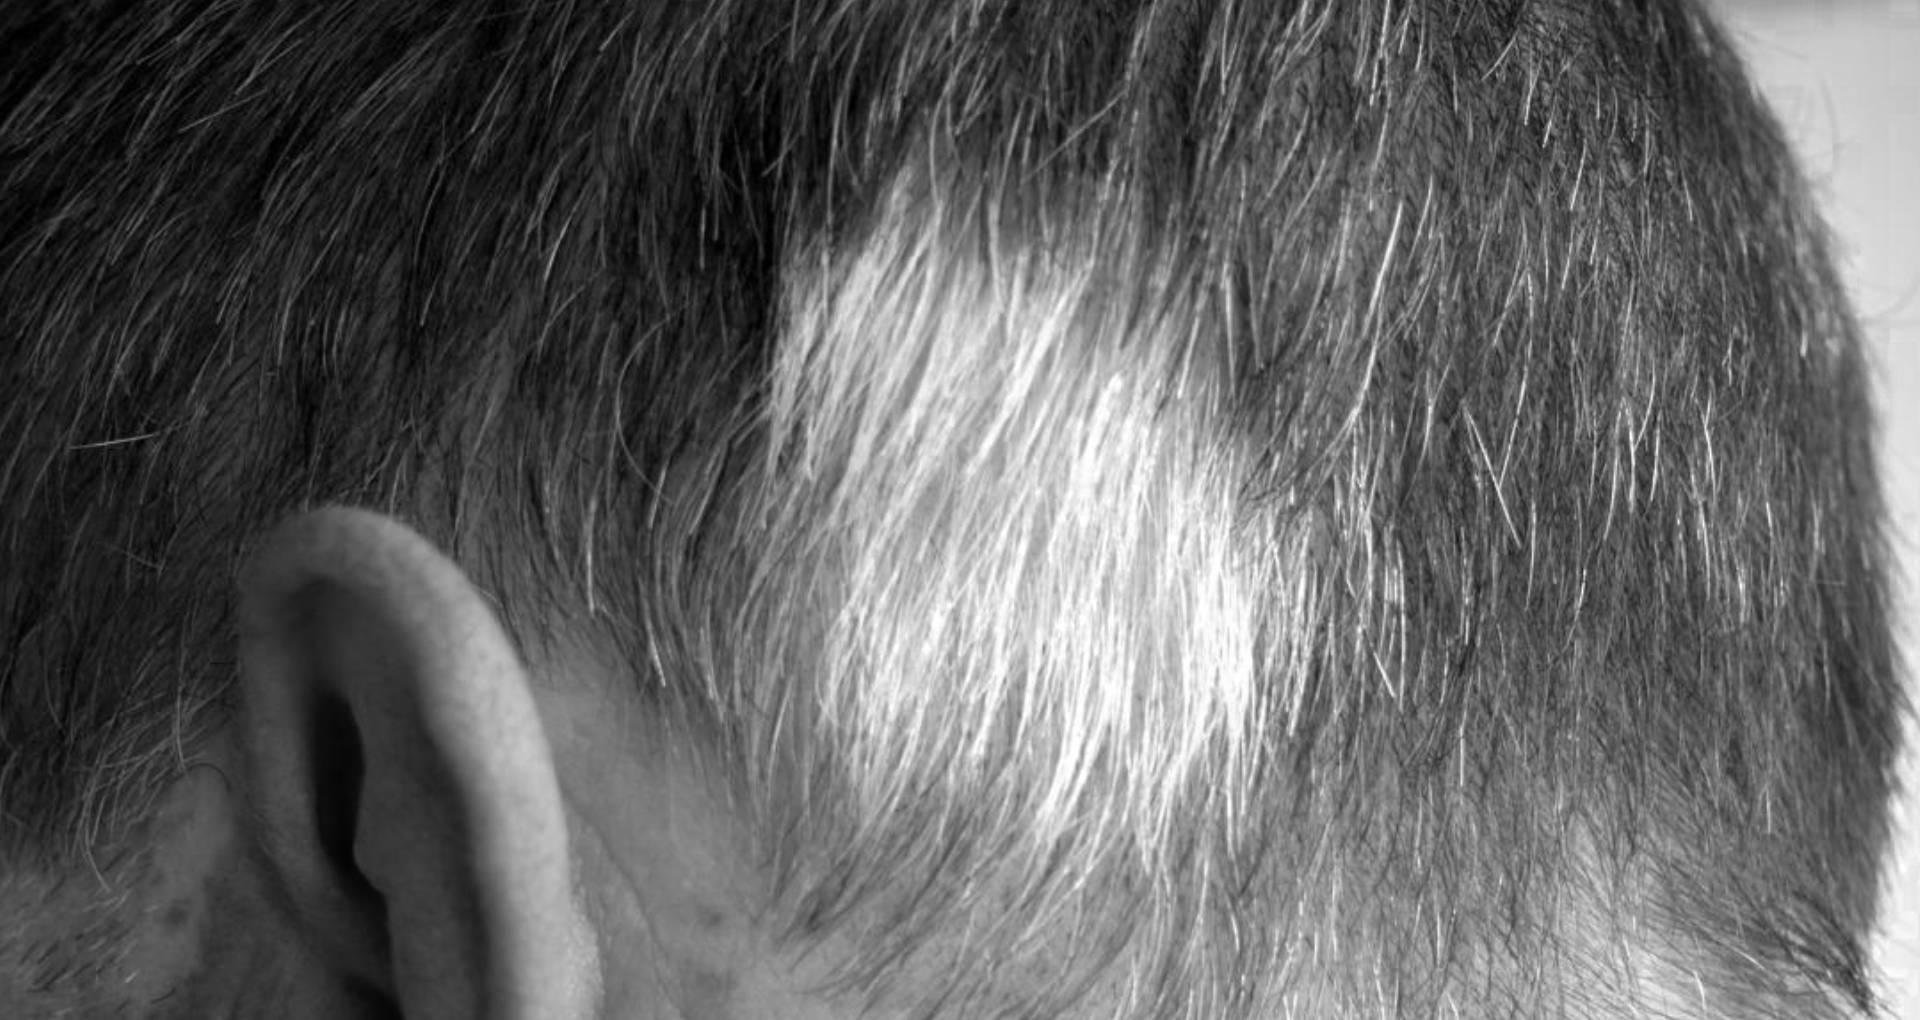 Hair Care Tips In Hindi: कम उम्र में हो रहे हैं बाल सफेद, तो जान लीजिए इसकी  वजह, बरतें सावधानी - lifestyle